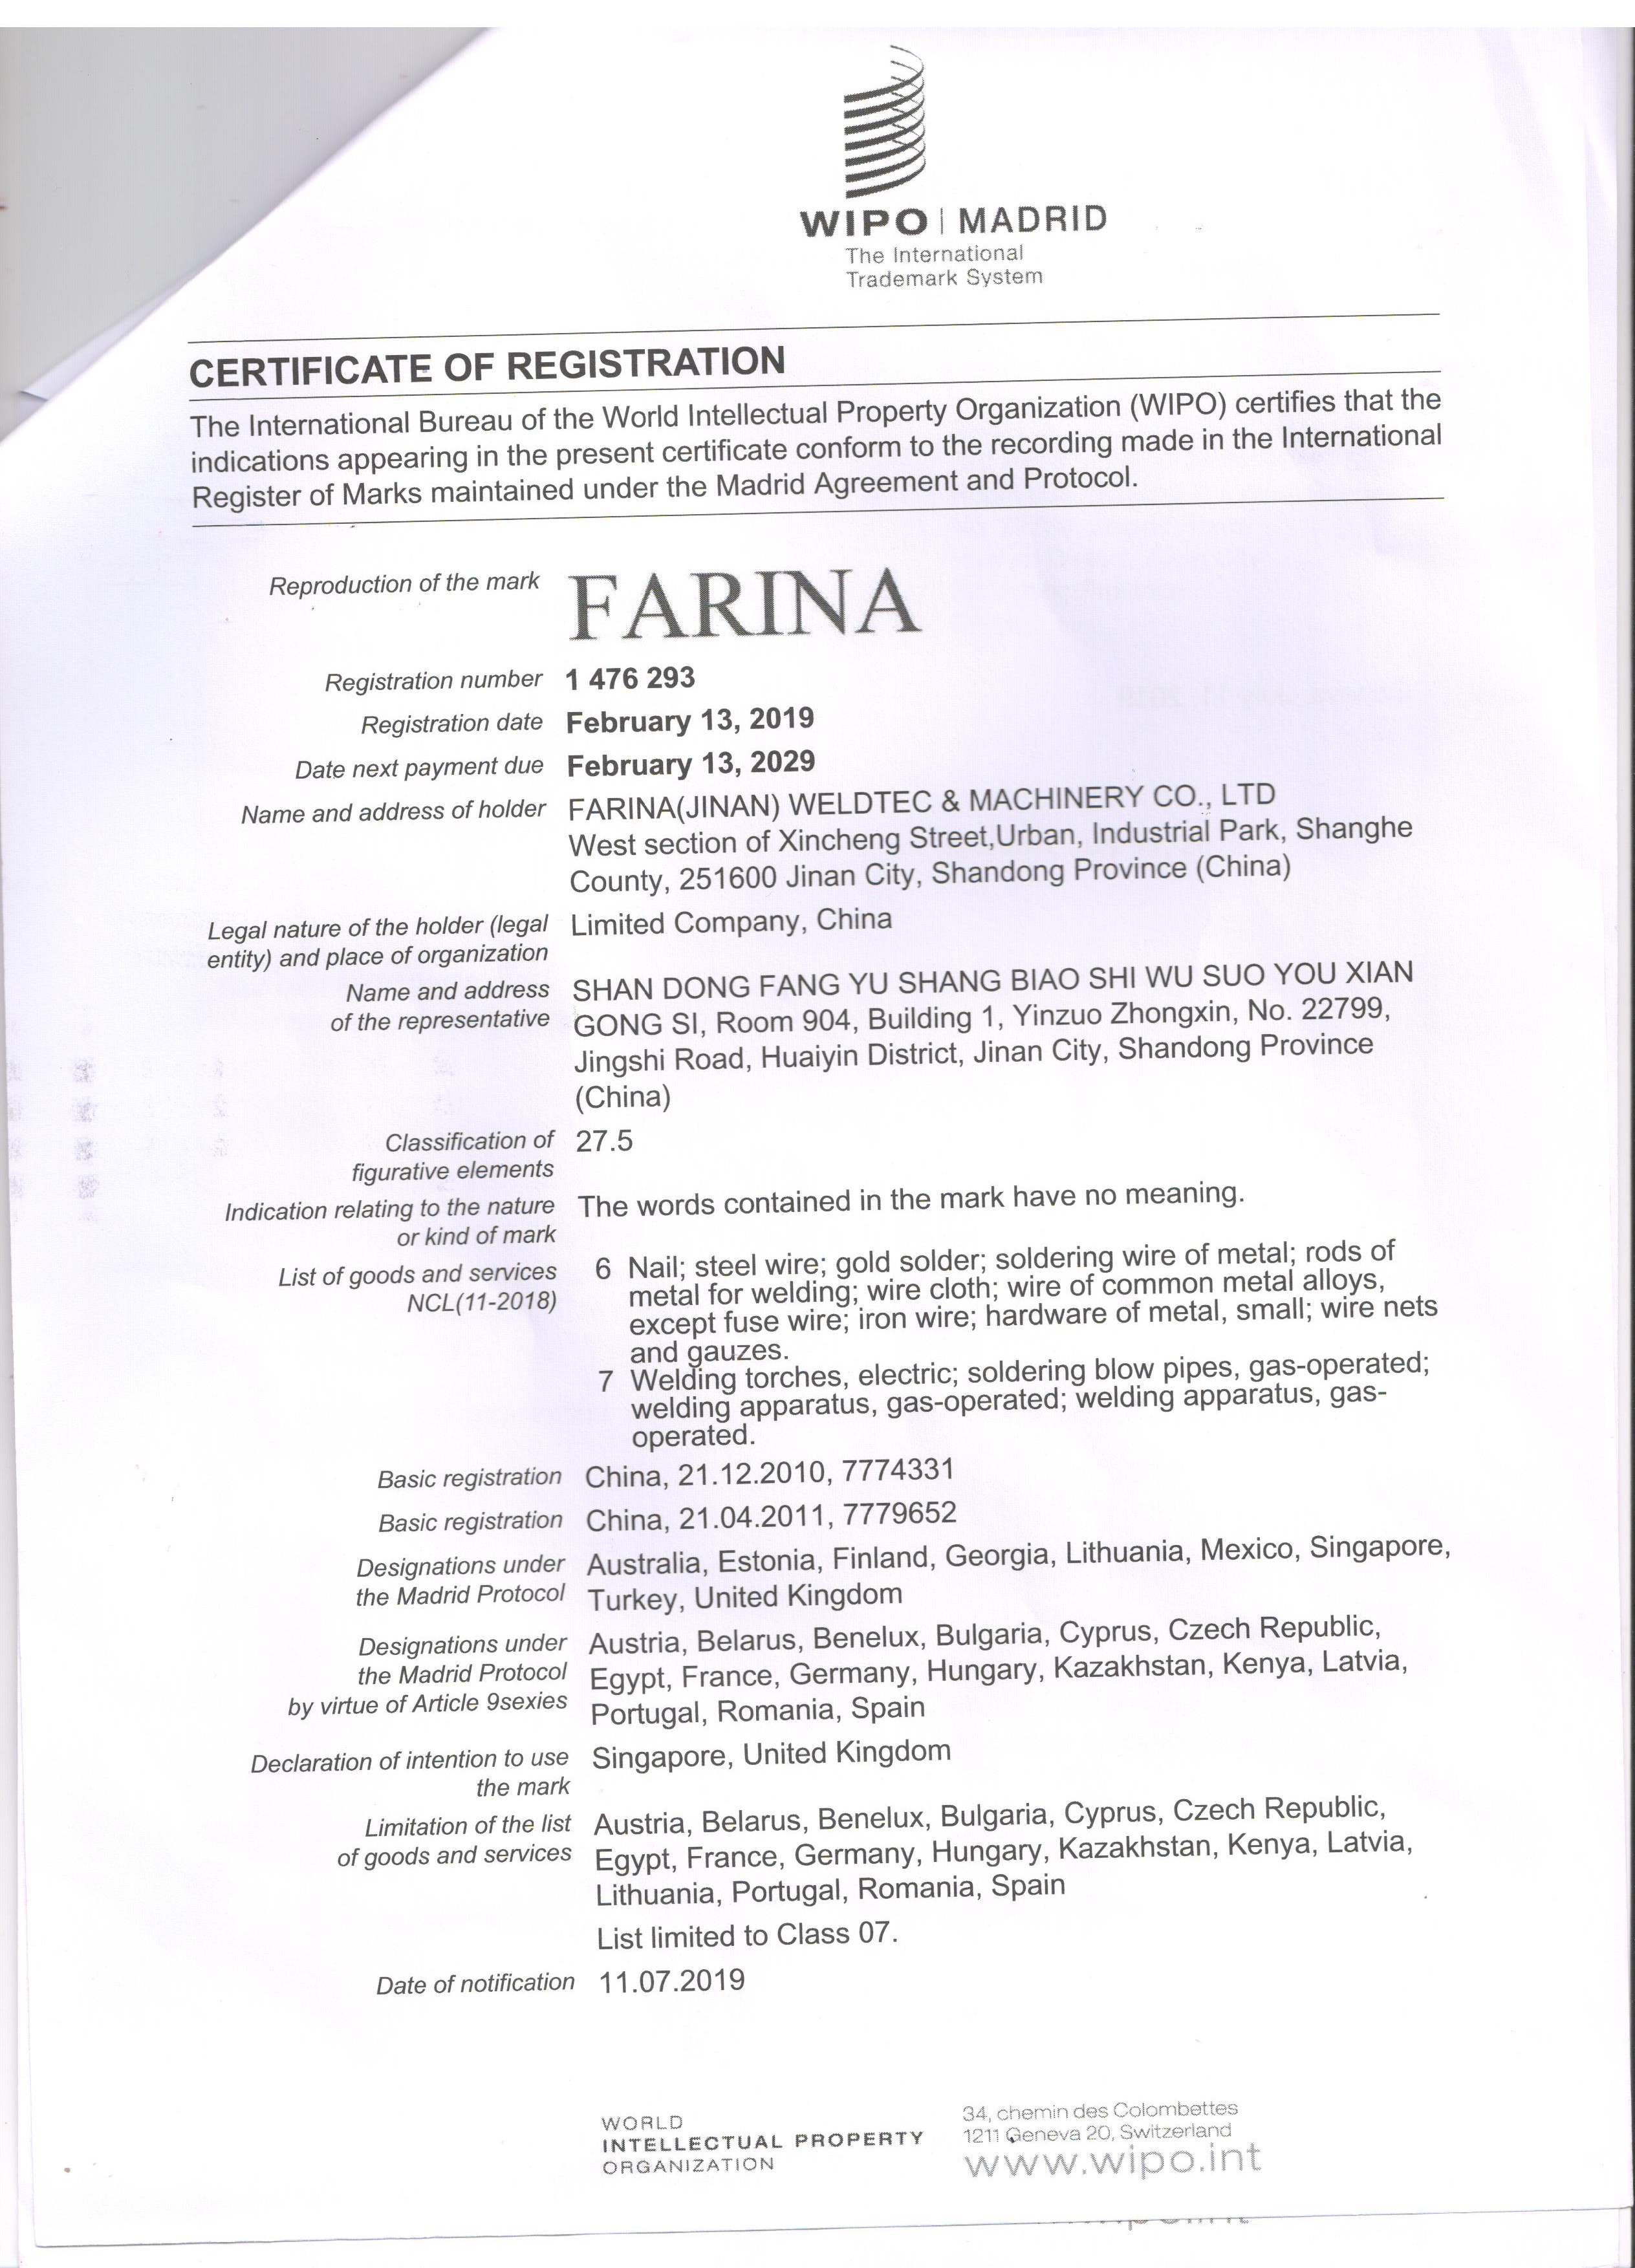 Праздновать успех нашей регистрации товарного знака Farina в 17 новых странах